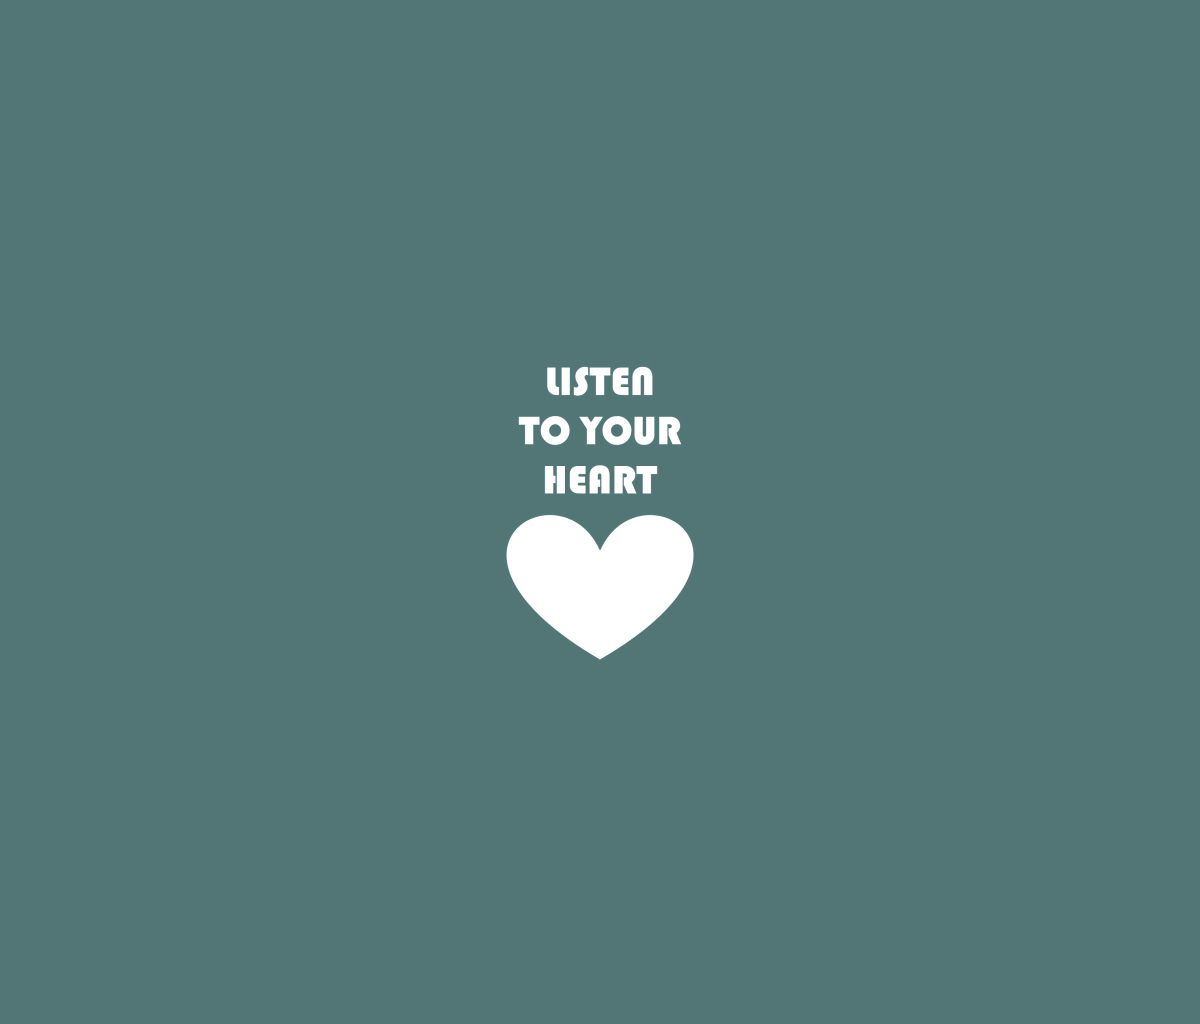 Das Listen To Your Heart Wallpaper 1200x1024